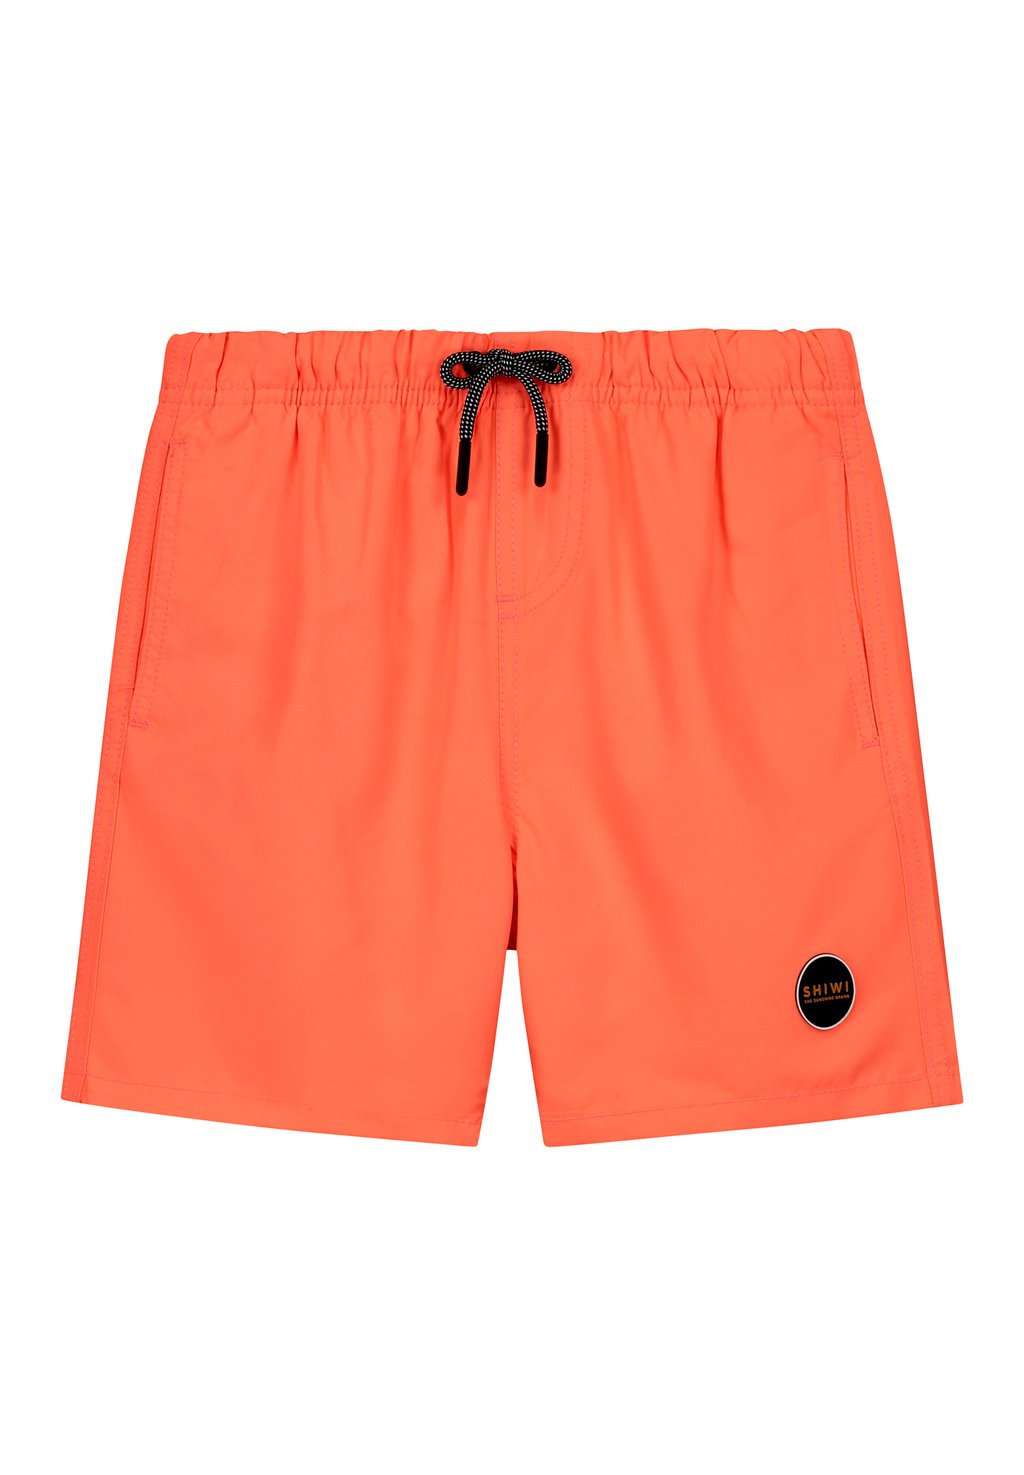 Шорты для плавания MIKE Shiwi, цвет neon orange шорты для плавания mike shiwi цвет neon orange